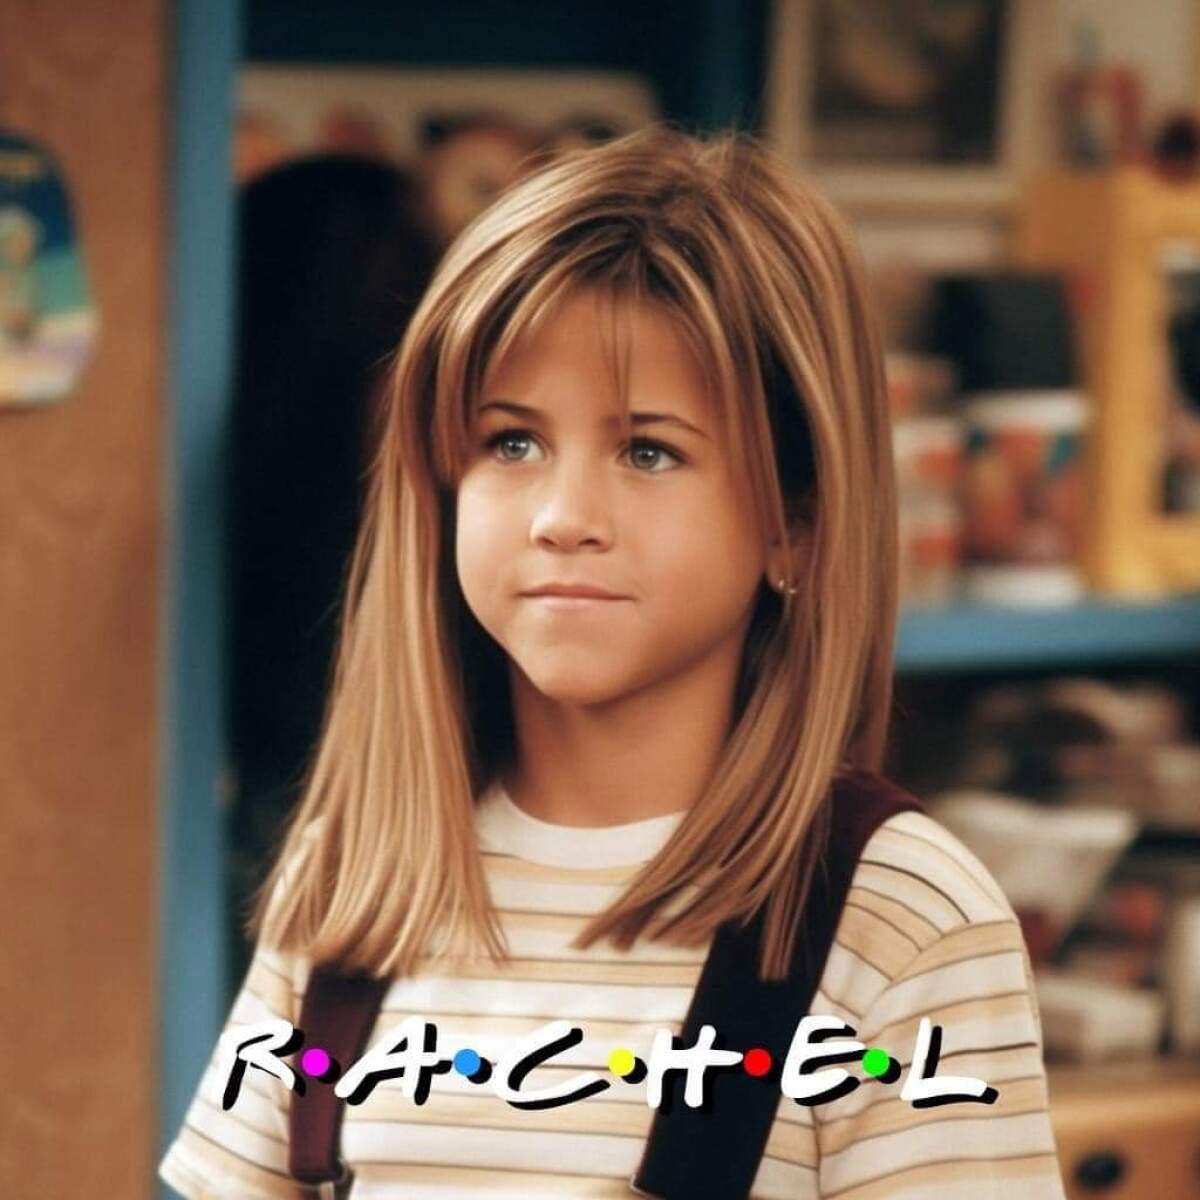 Cómo se vería Rachel de Friends con 5 años